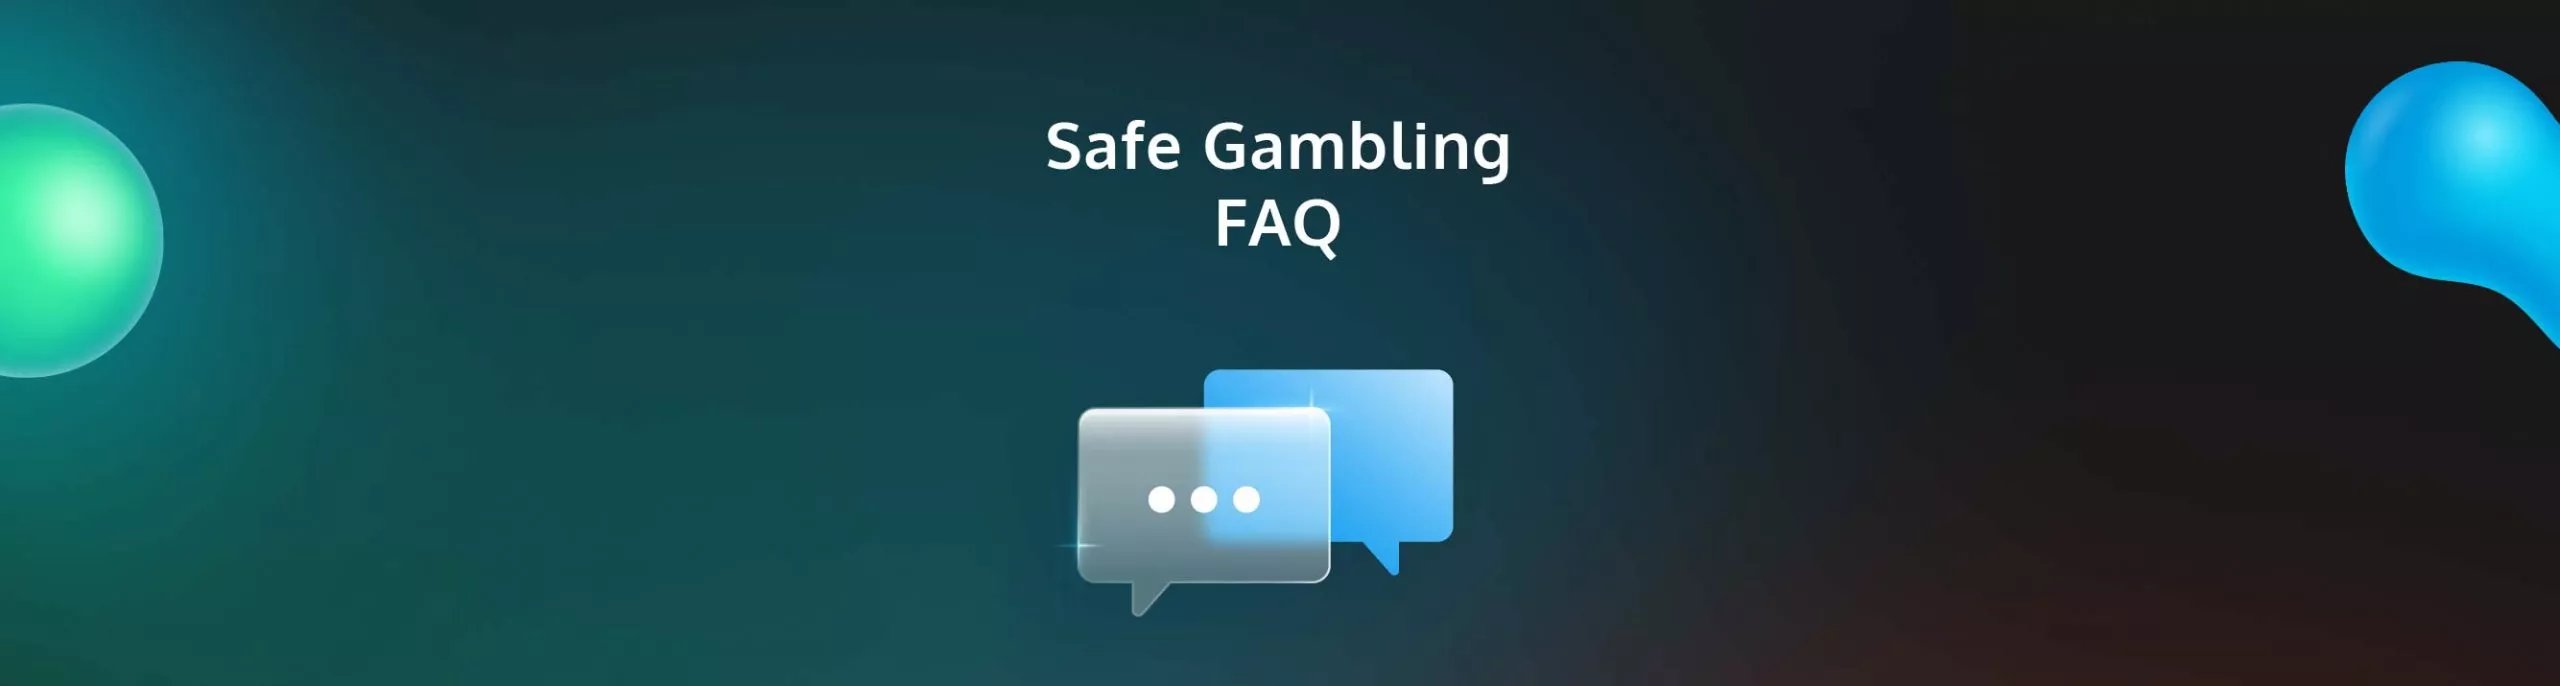 Safe Gambling FAQ